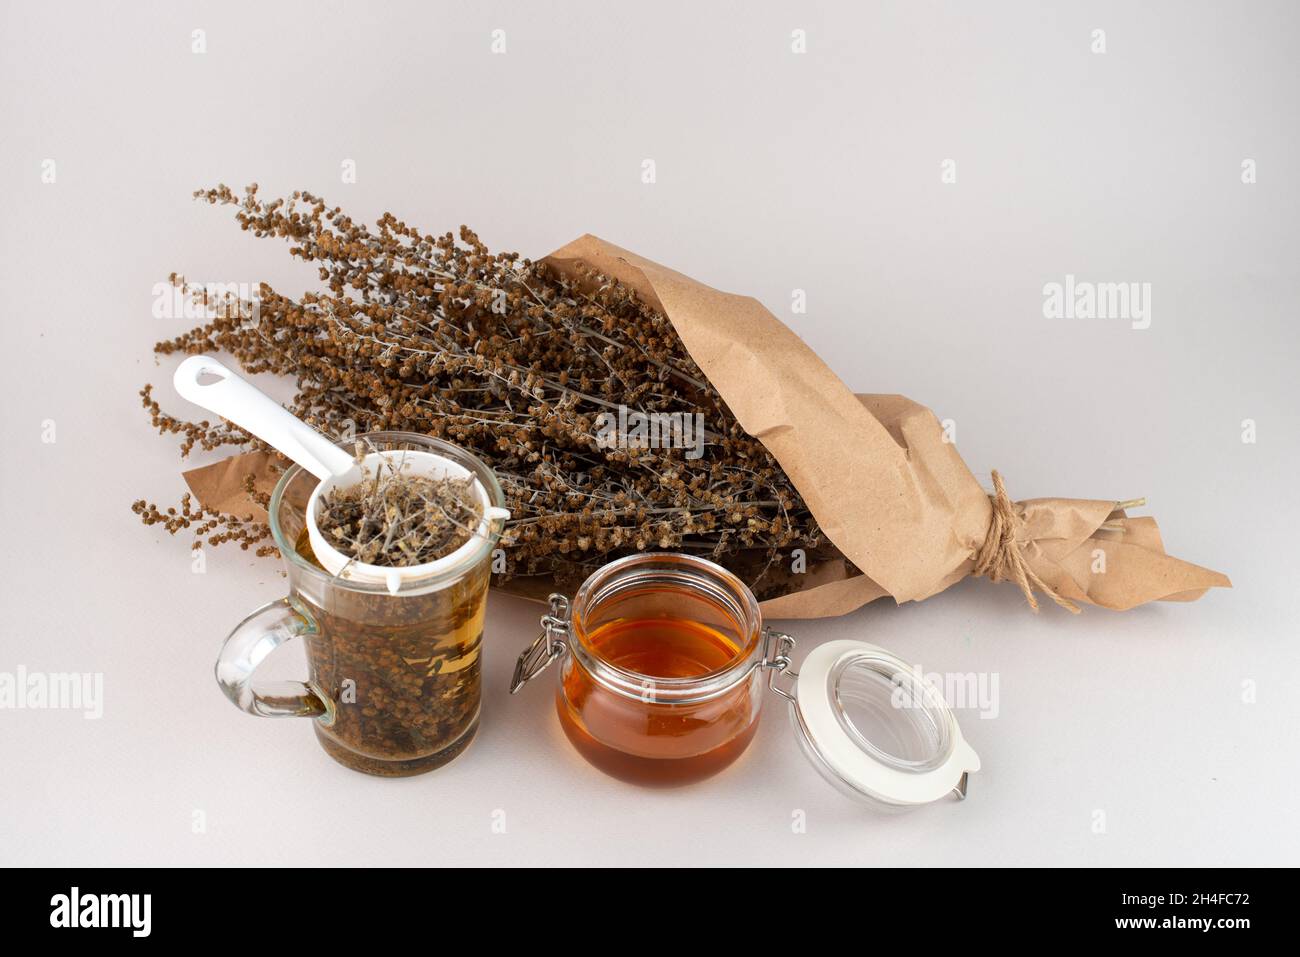 Verre de thé aux herbes, tamis à thé, brindilles au miel et au bois de millepertuis enveloppés de papier brun. Banque D'Images